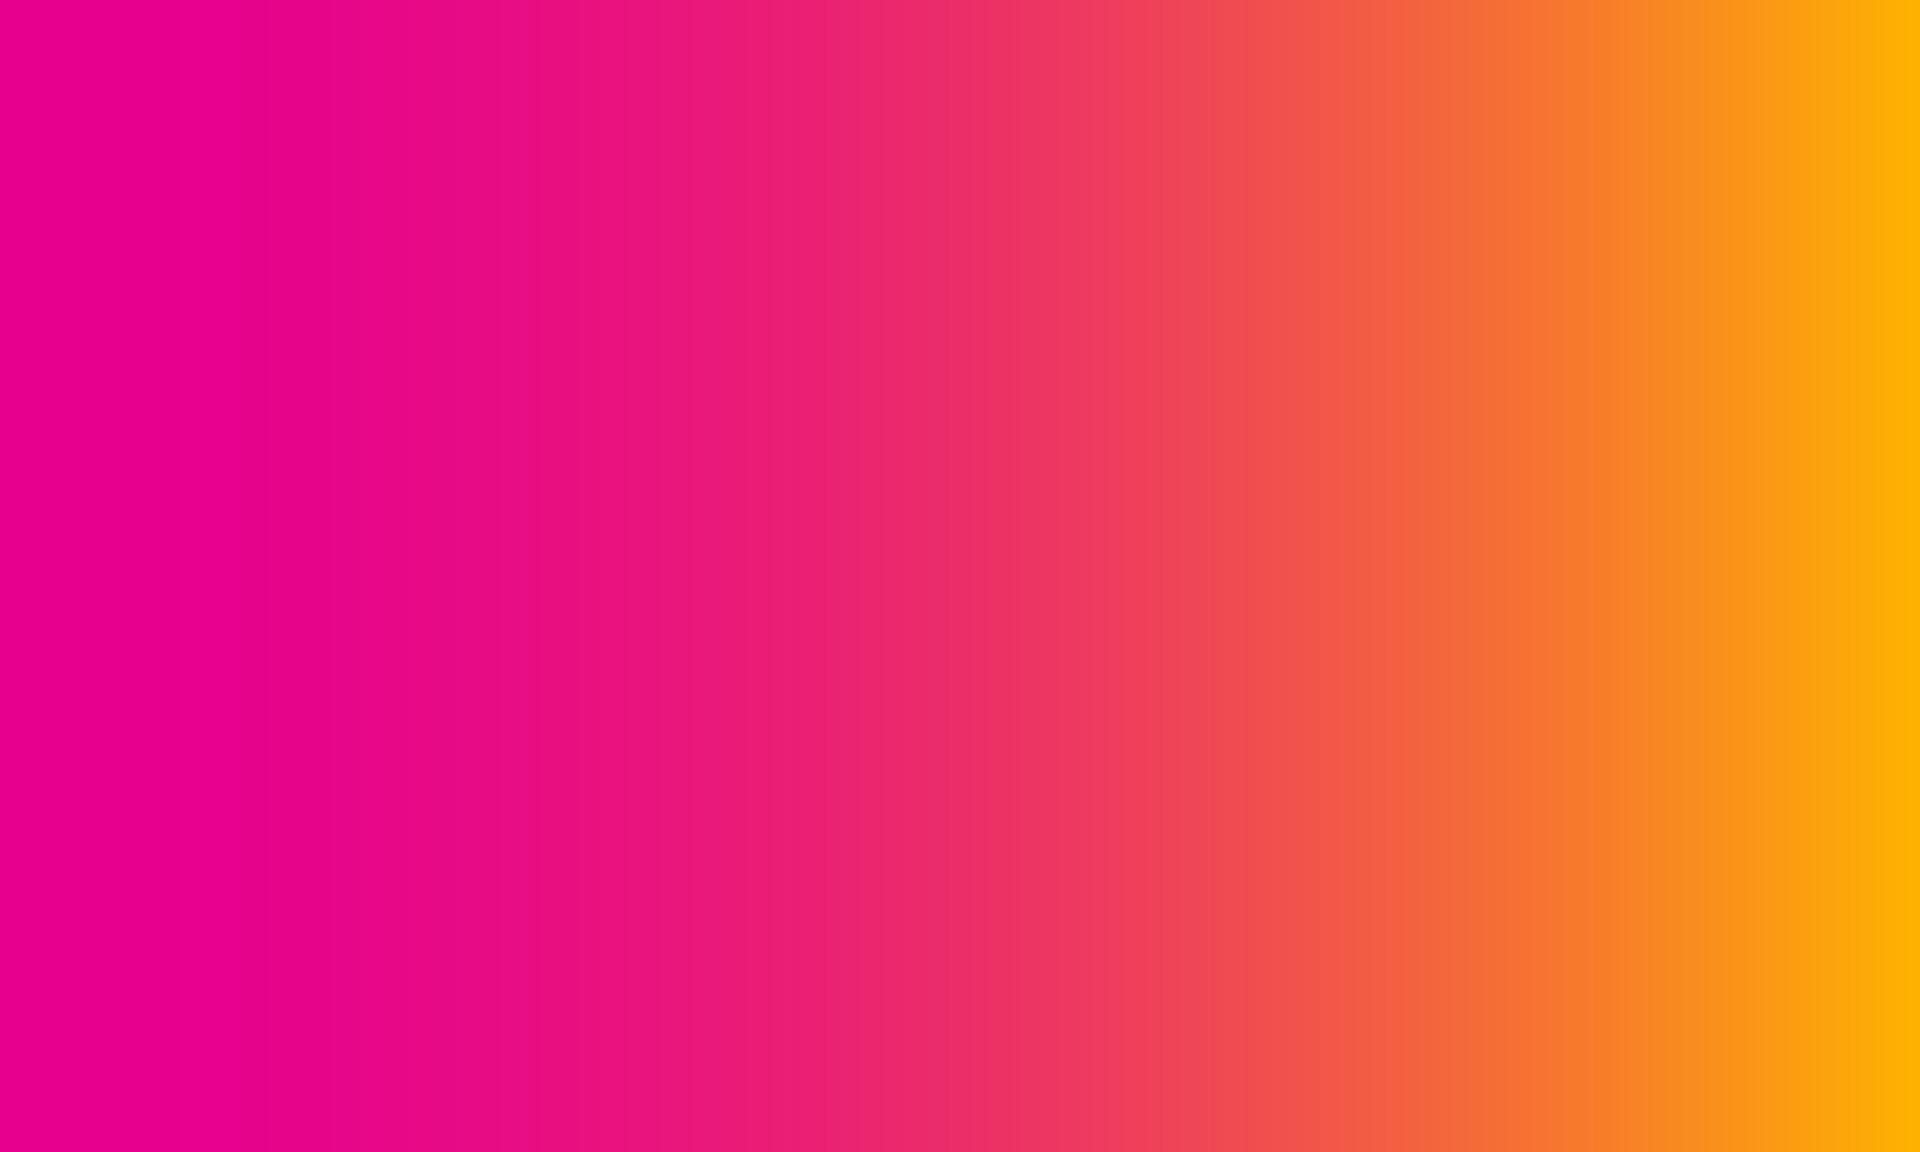 Đồ họa độ dốc từ màu hồng đến cam sẽ khiến cho bạn bị lôi cuốn vào vẻ đẹp mang tính tương phản cực cao. Với màu sắc ấn tượng và sắc nét, đây sẽ là một trong những bức hình tuyệt đẹp nhất mà bạn từng được chiêm ngưỡng. Hãy tìm hiểu sự đan xen giữa màu hồng và cam và cảm nhận cùng những hình ảnh độc đáo.